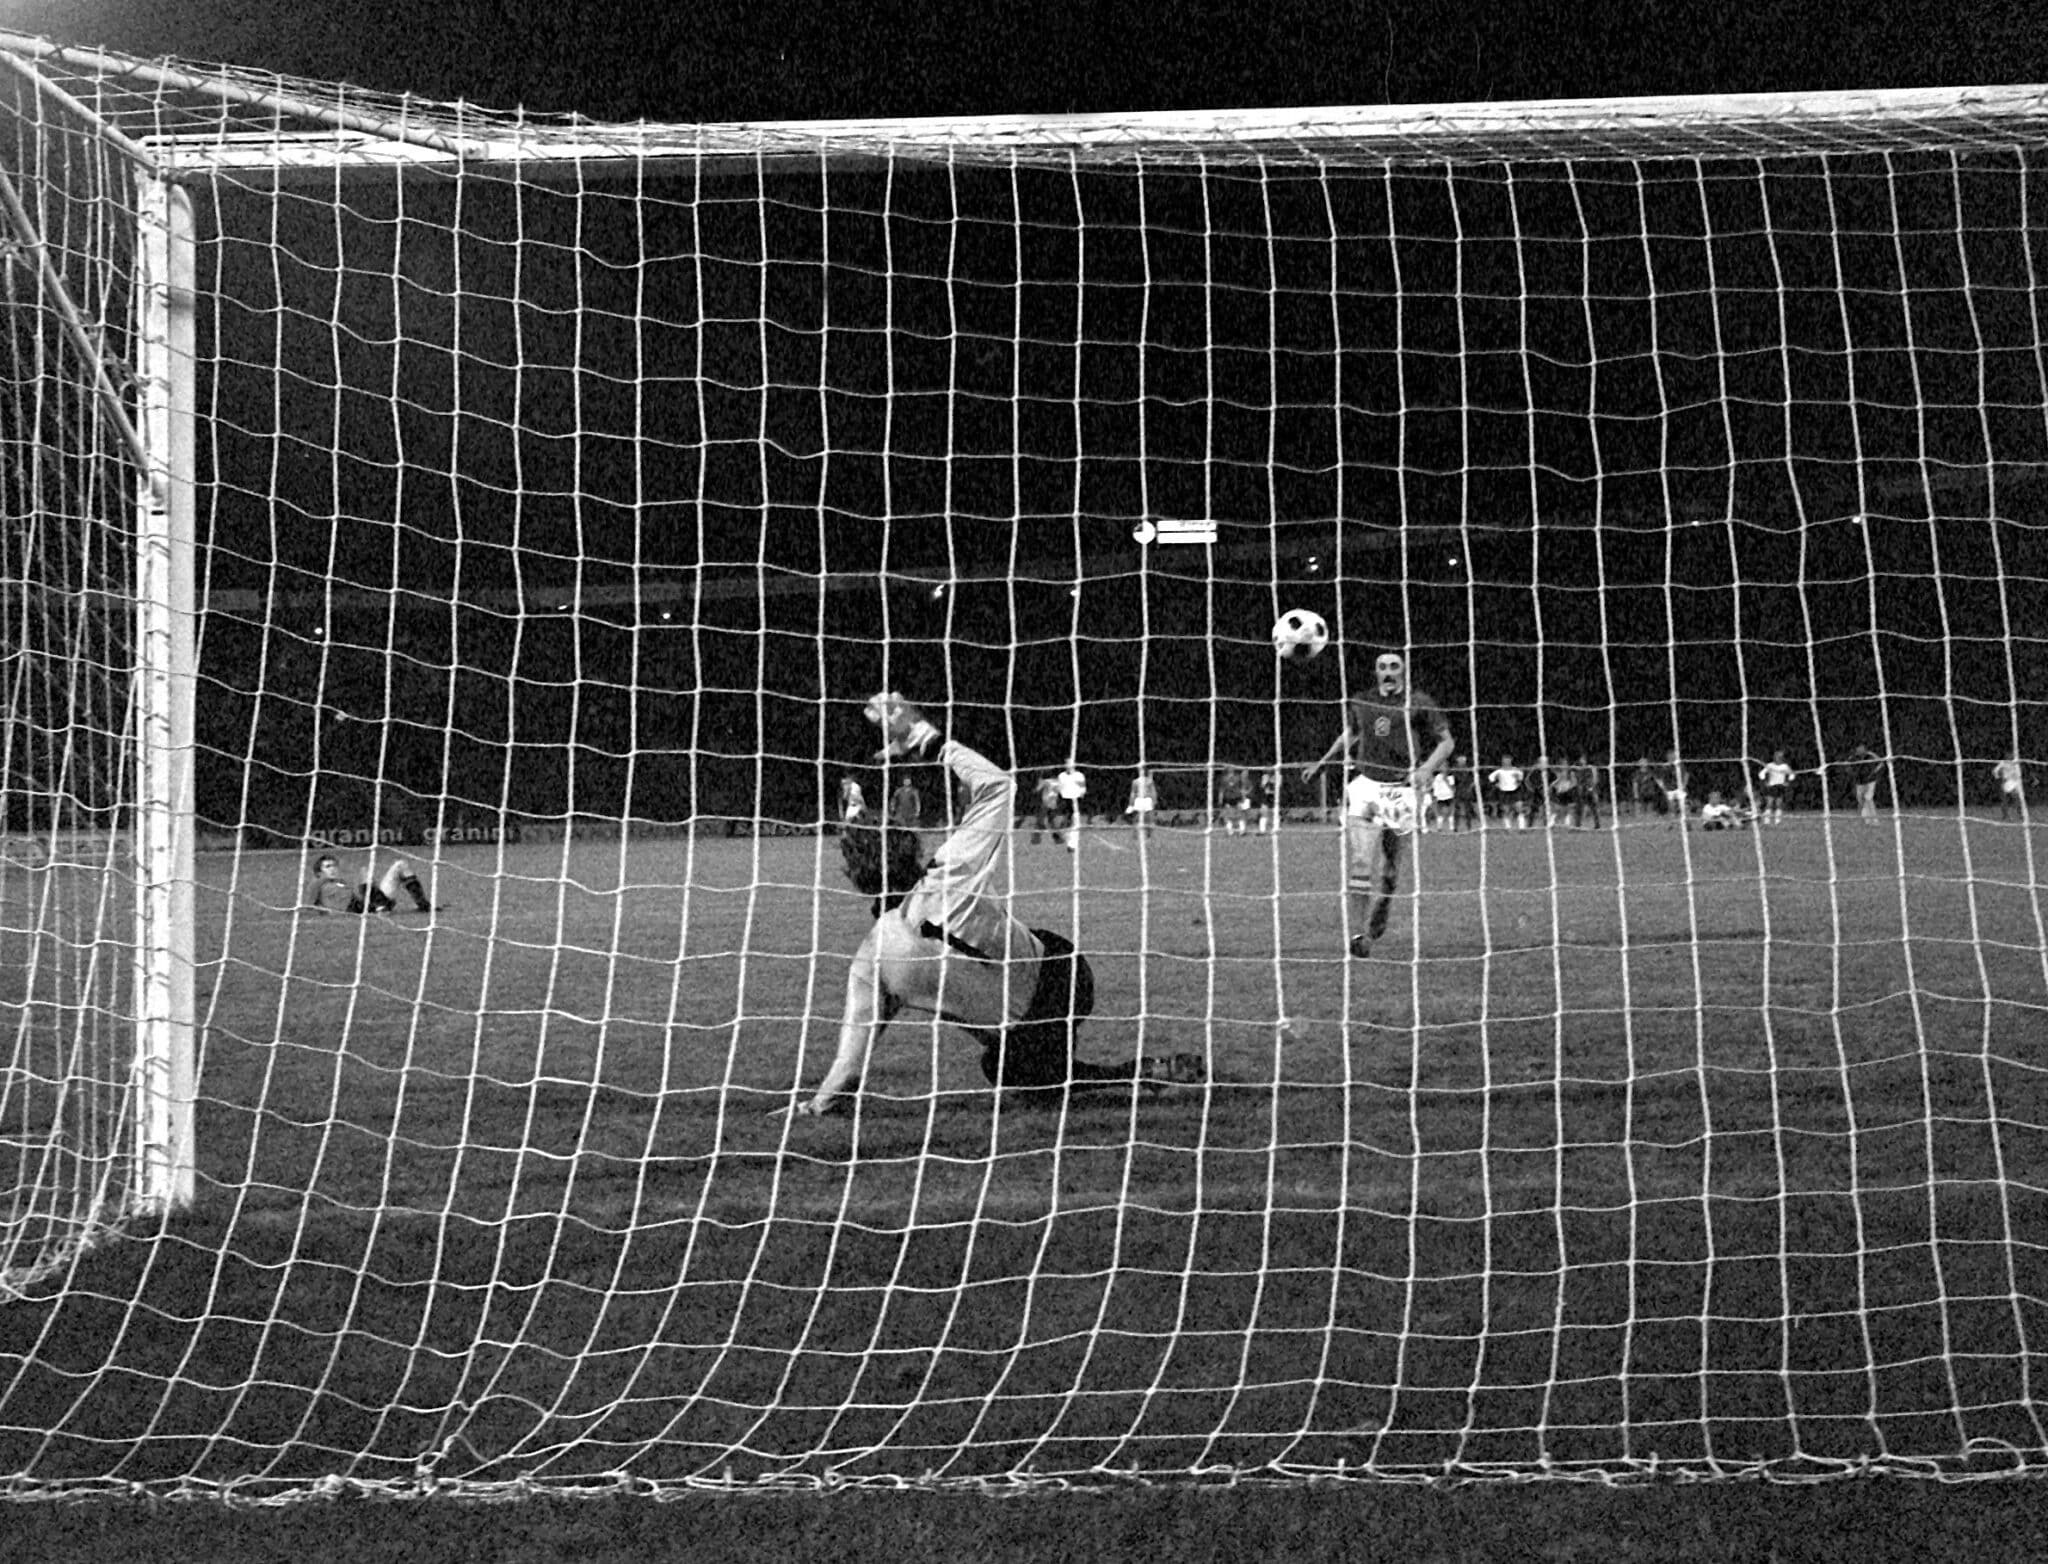 Lanzamiento de penalti de Antonin Panenka que dio la victoria a Checoslovaquia en la Eurocopa 1976